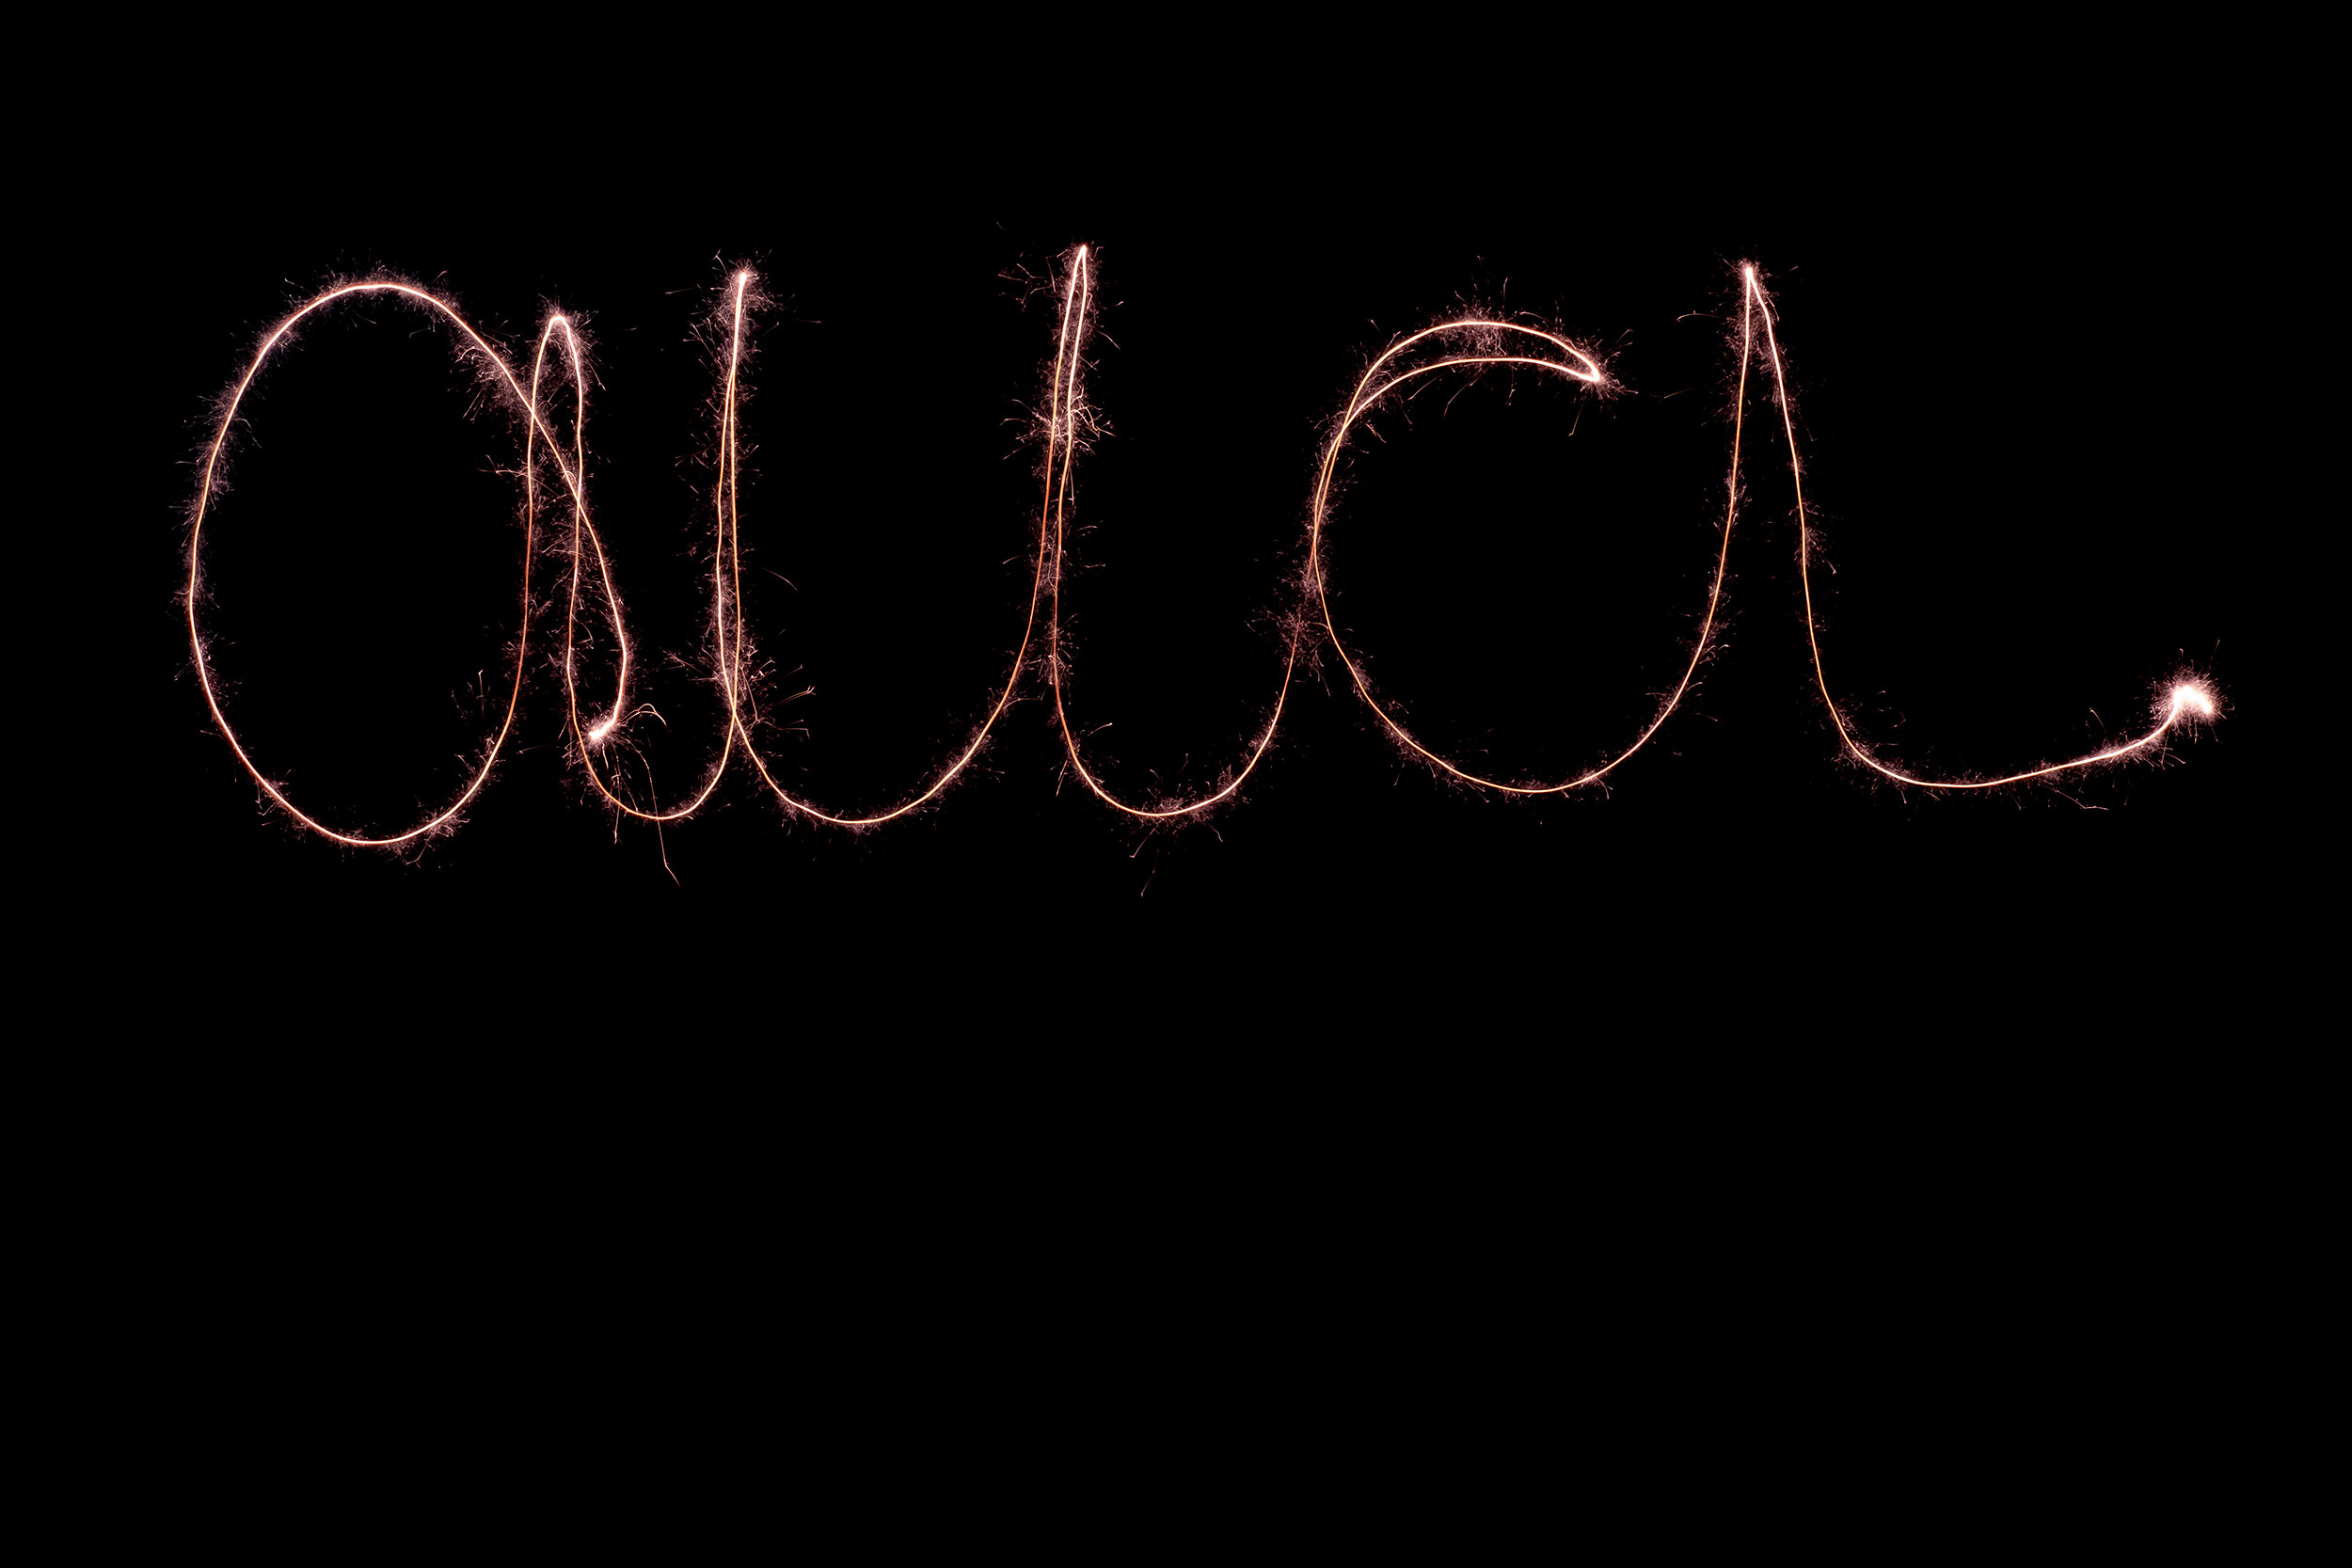 Man sieht das Wort "aua" mit einer Wunderkerze in die Luft geschrieben. Die Schrift leuchtet auf einem schwarzen Hintergrund.